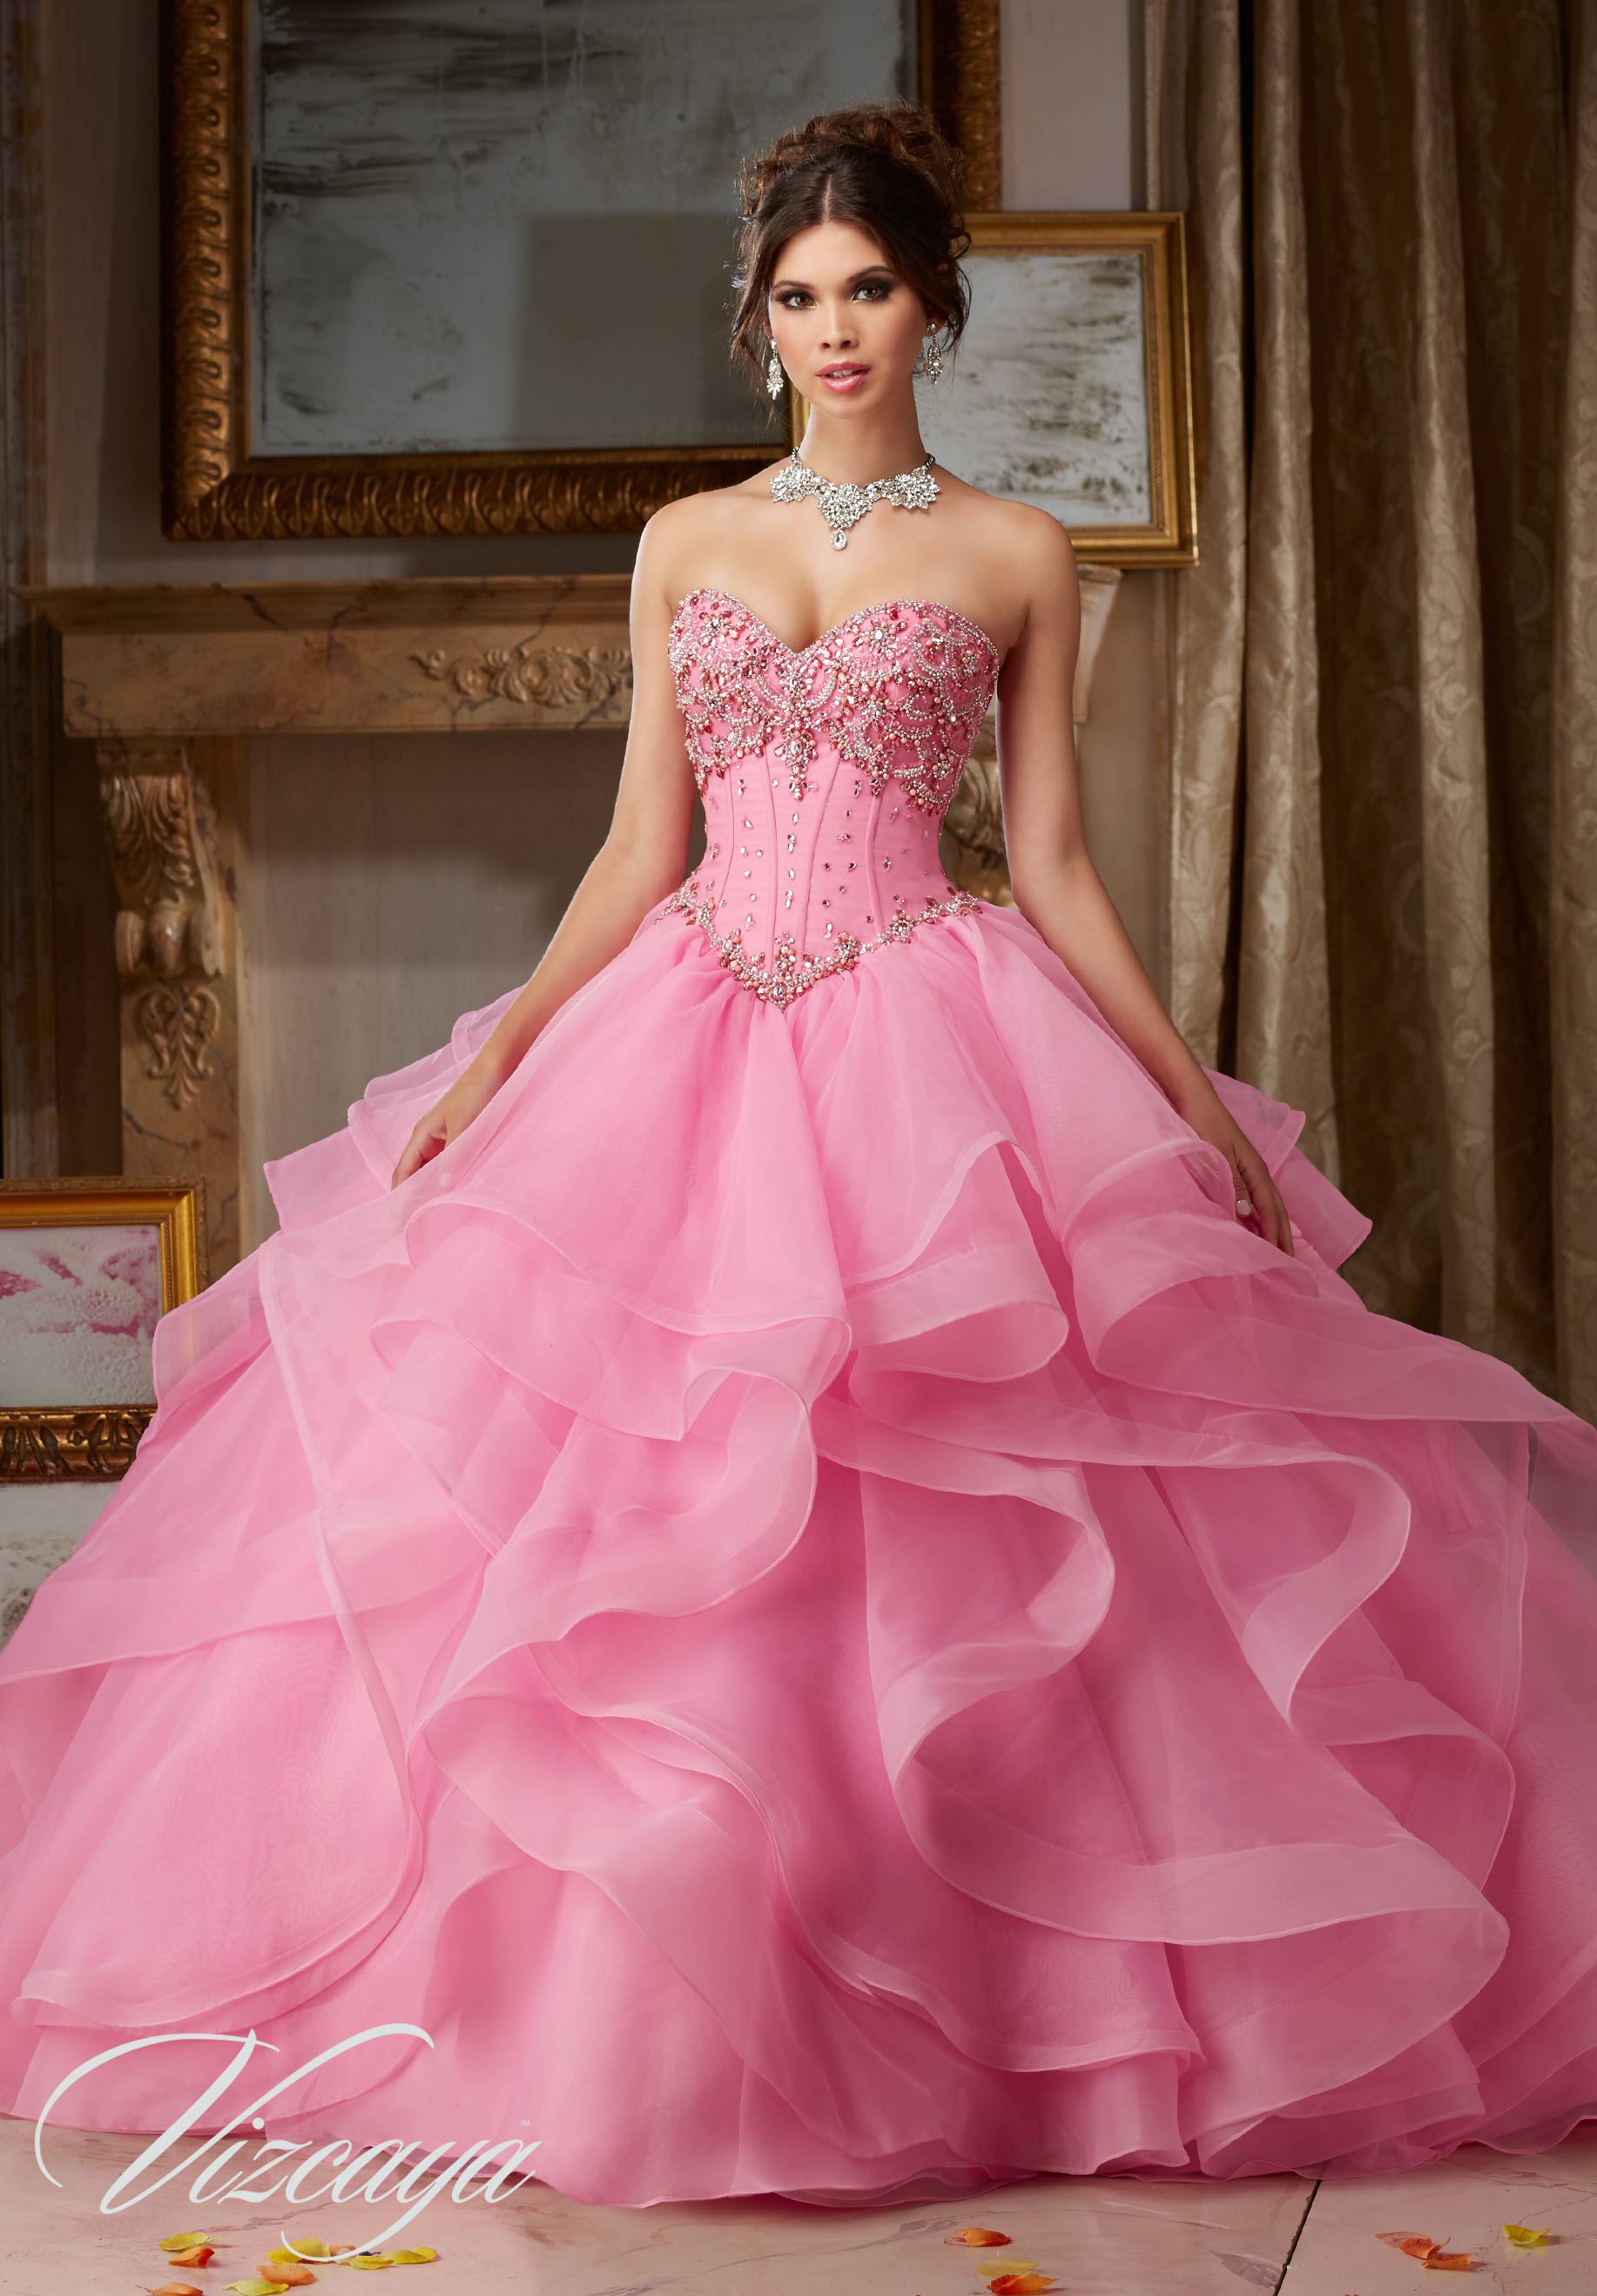 Elegancia Bridal  Austin  Quinceanera Dresses  Prom 